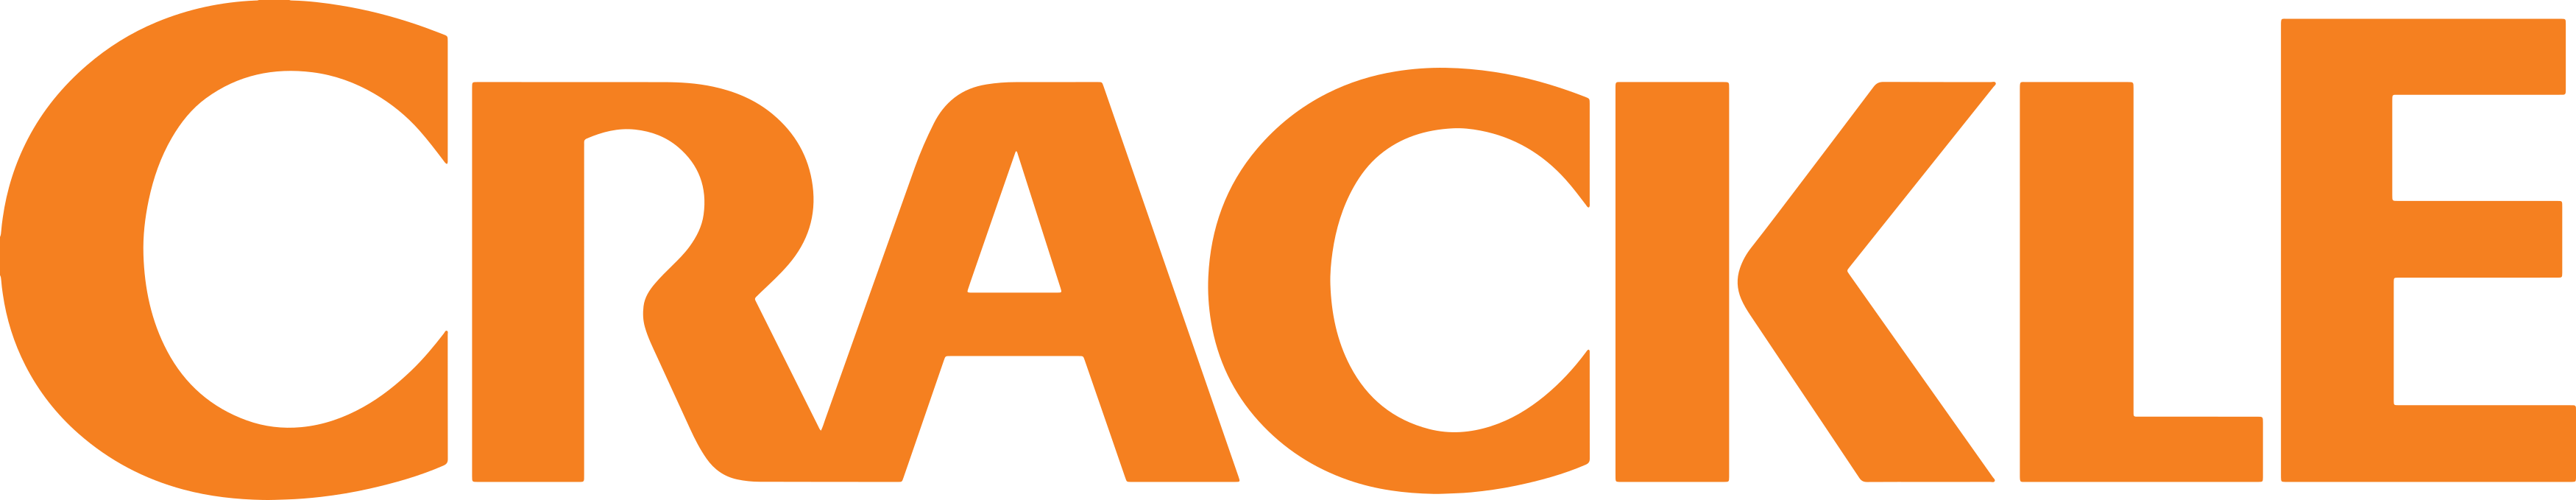 crackle logo 1 - Crackle Logo